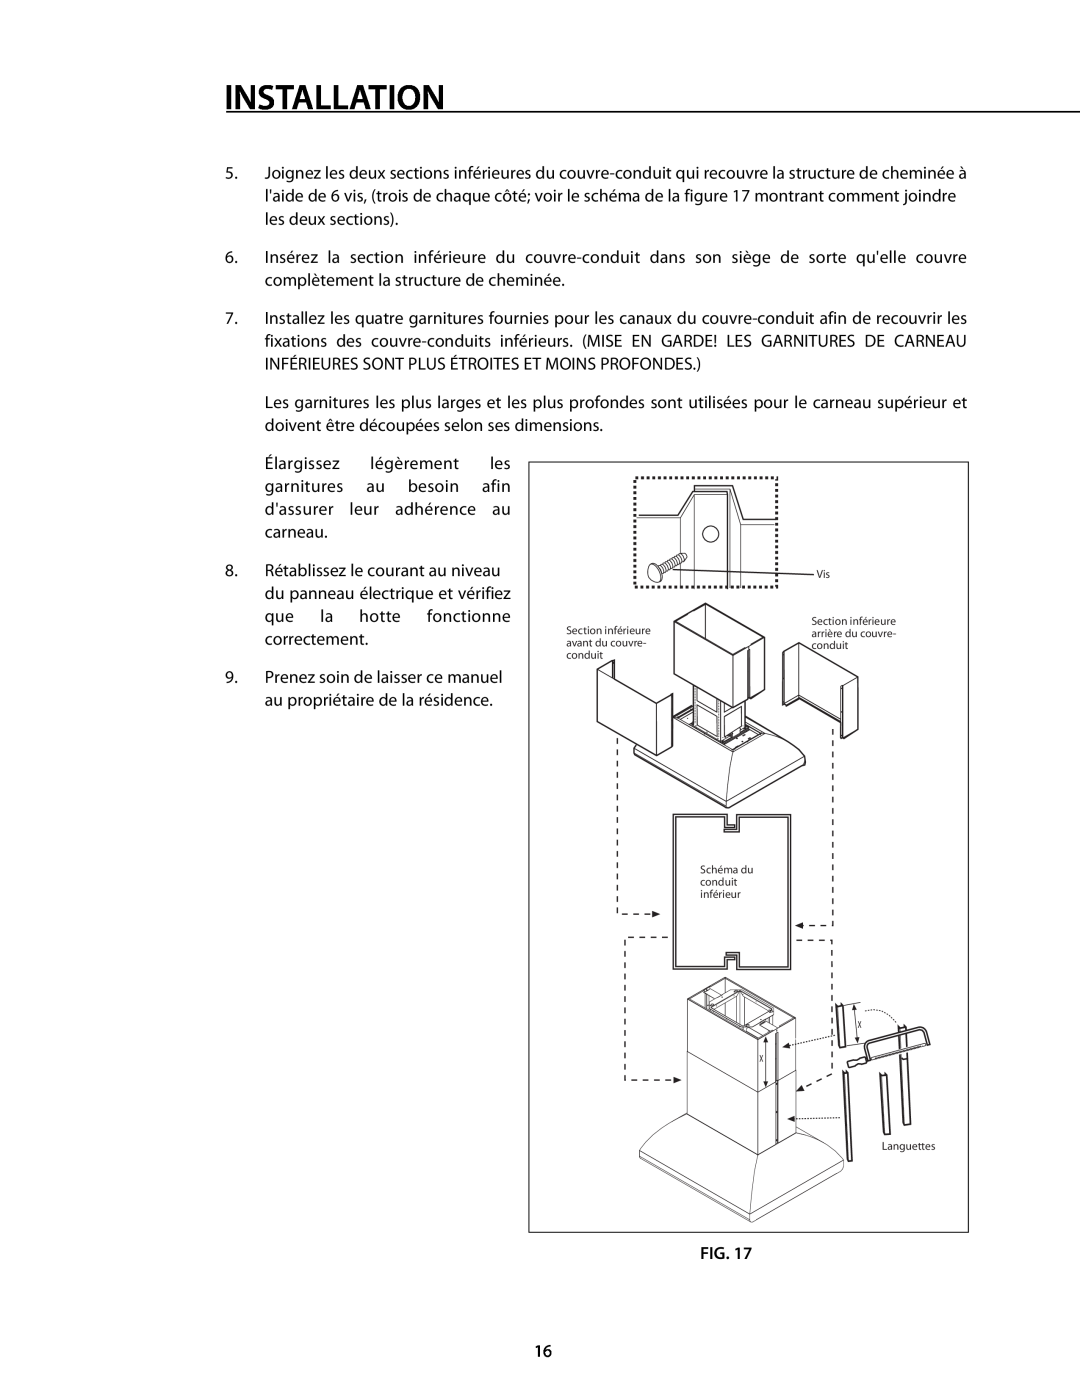 DCS 221712 manual Installation, Prenez soin de laisser ce manuel au propriétaire de la résidence, Languettes 